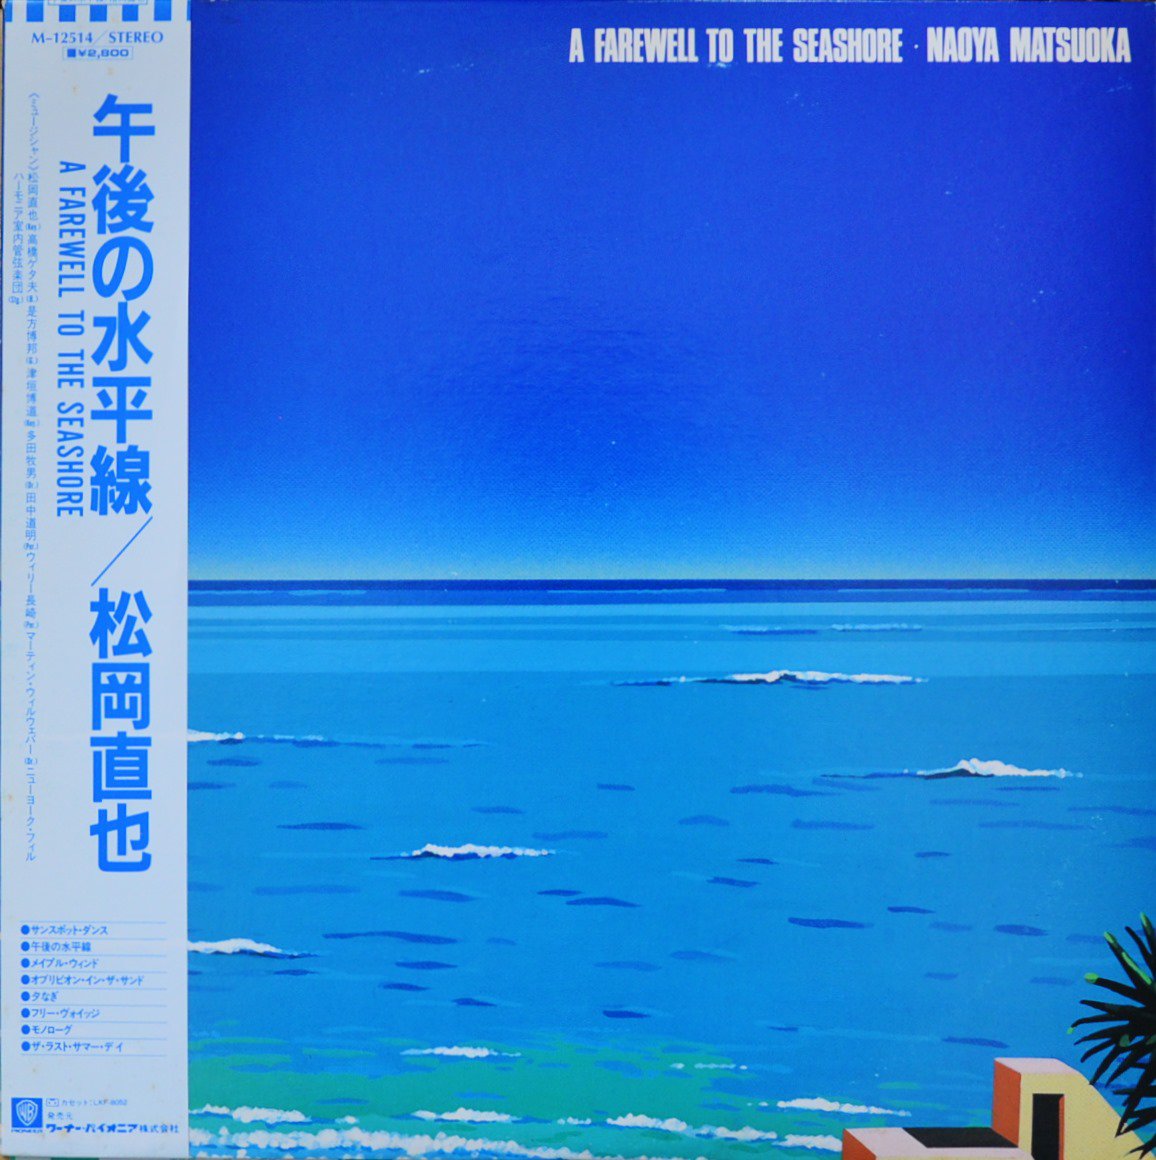 松岡直也 NAOYA MATSUOKA / 午後の水平線 A FAREWELL TO THE SEASHORE (LP)